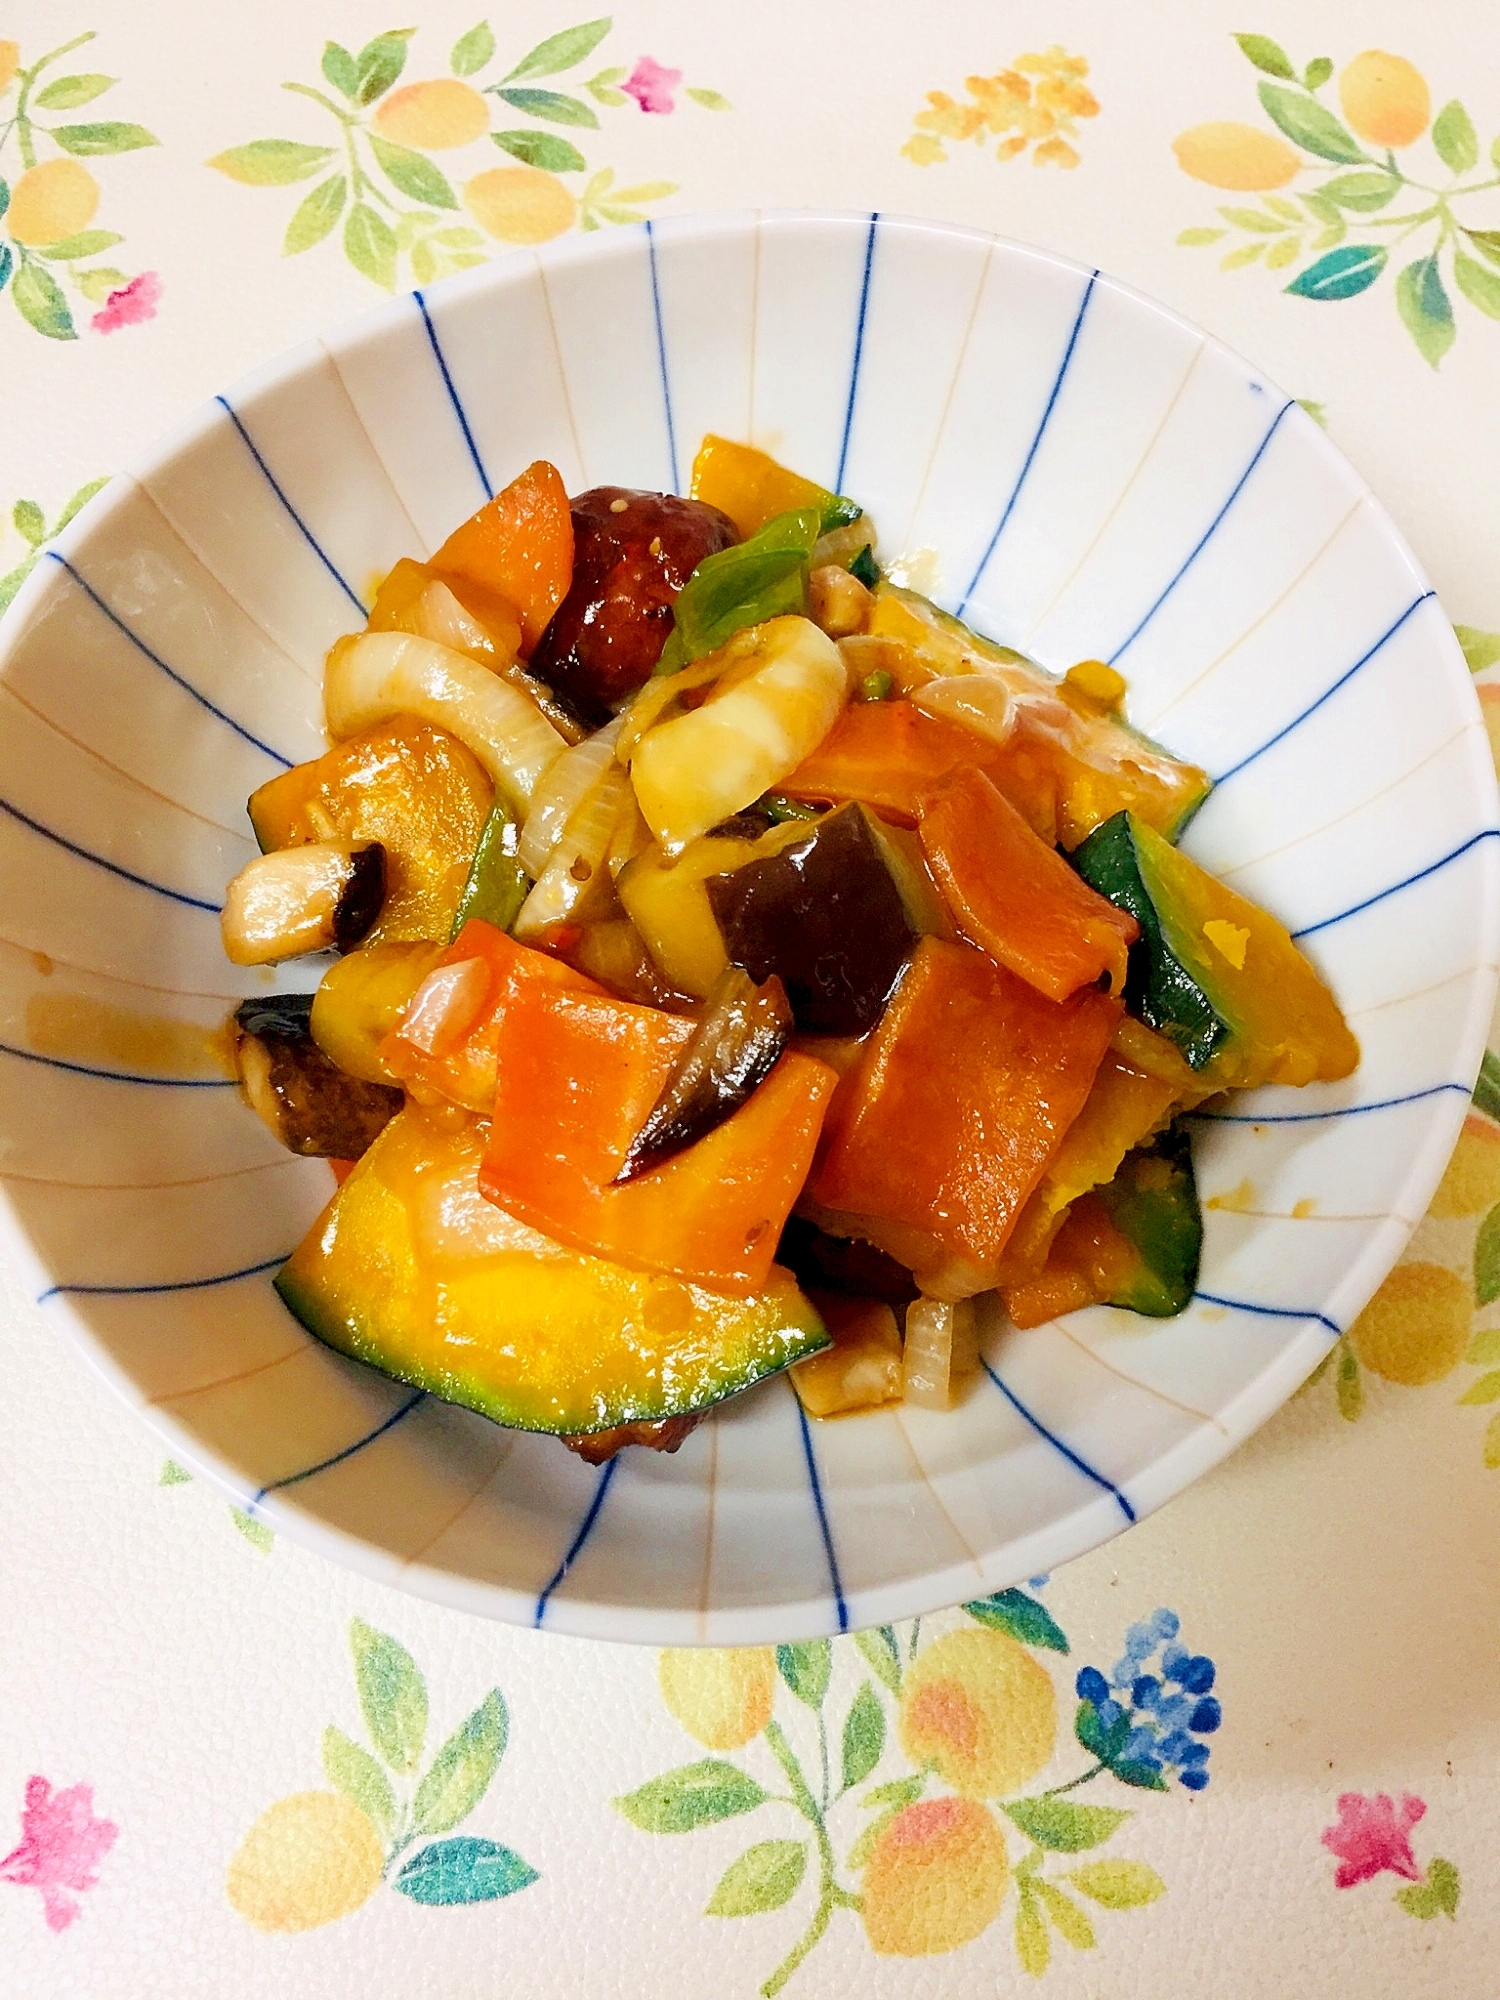 総菜肉団子とピーマンかぼちゃ茄子の夏野菜酢豚風